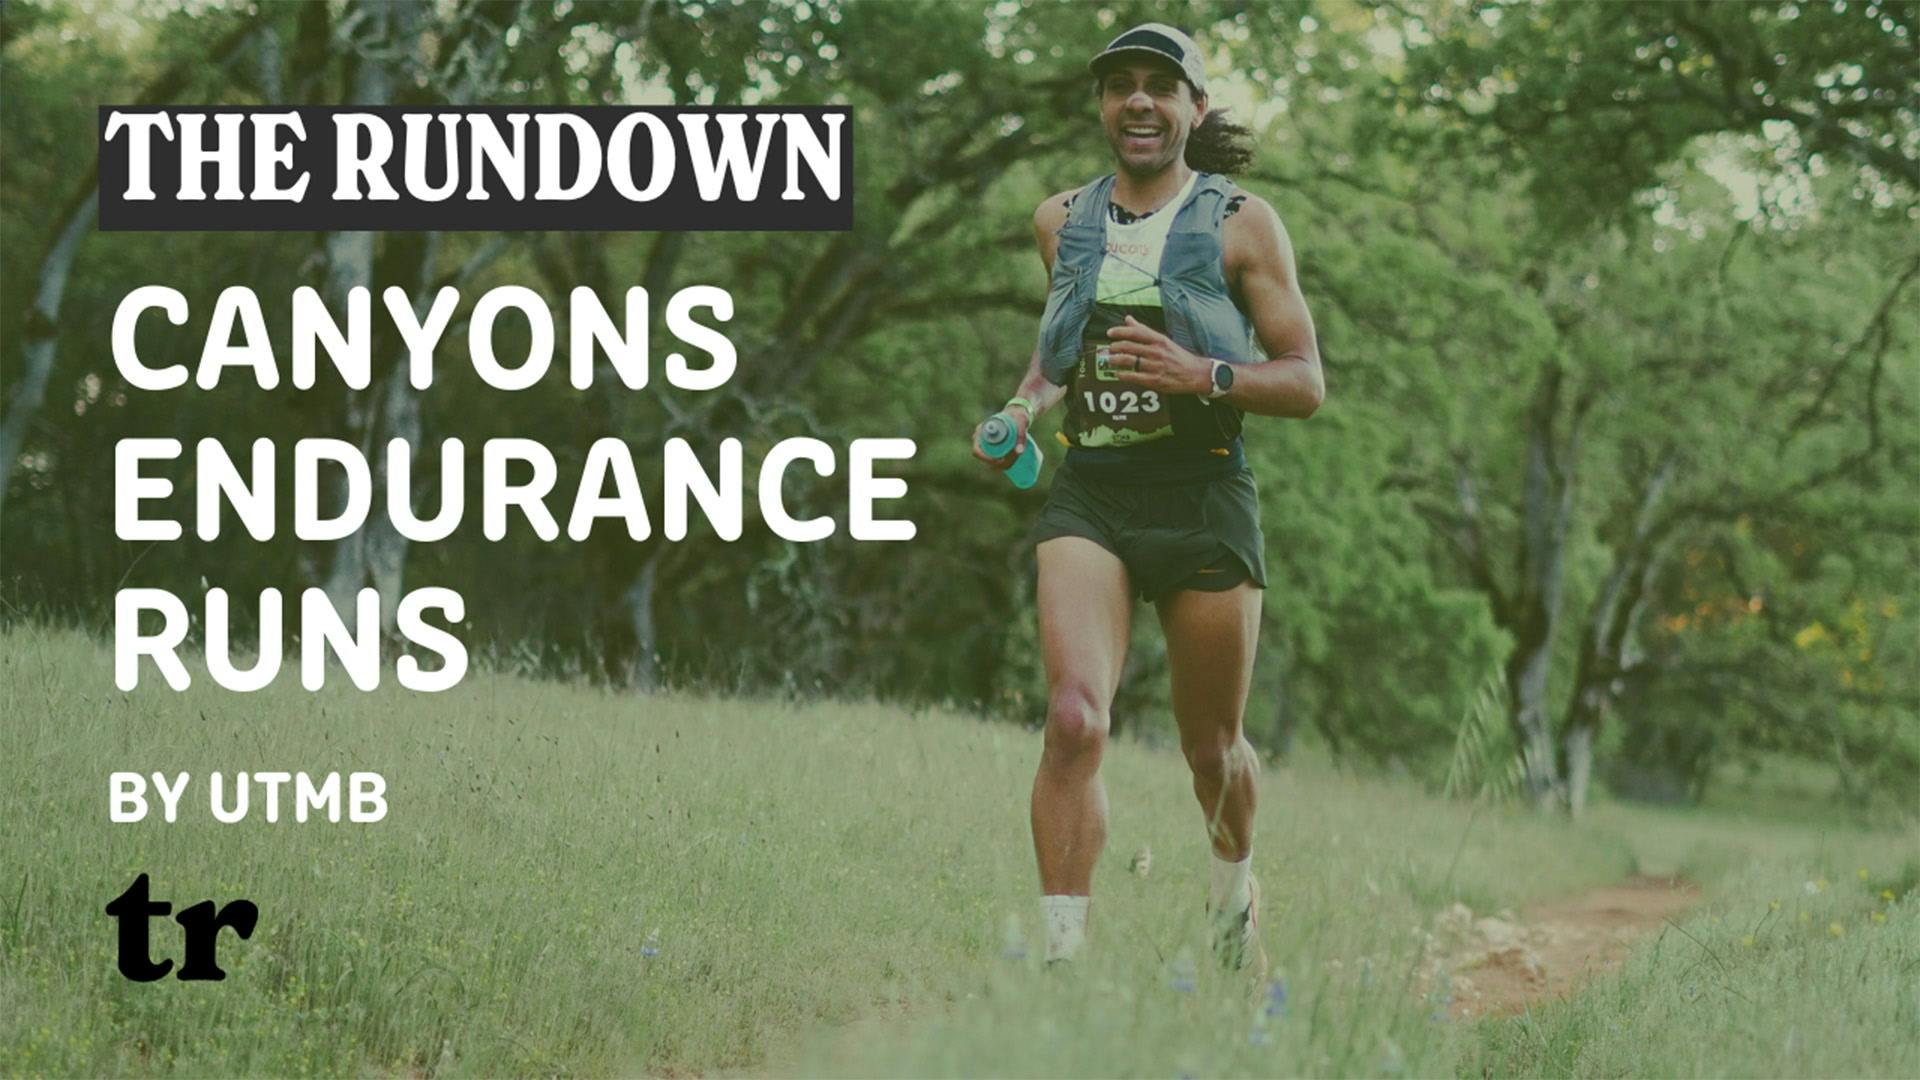 Canyons Endurance Runs by UTMB | The Rundown